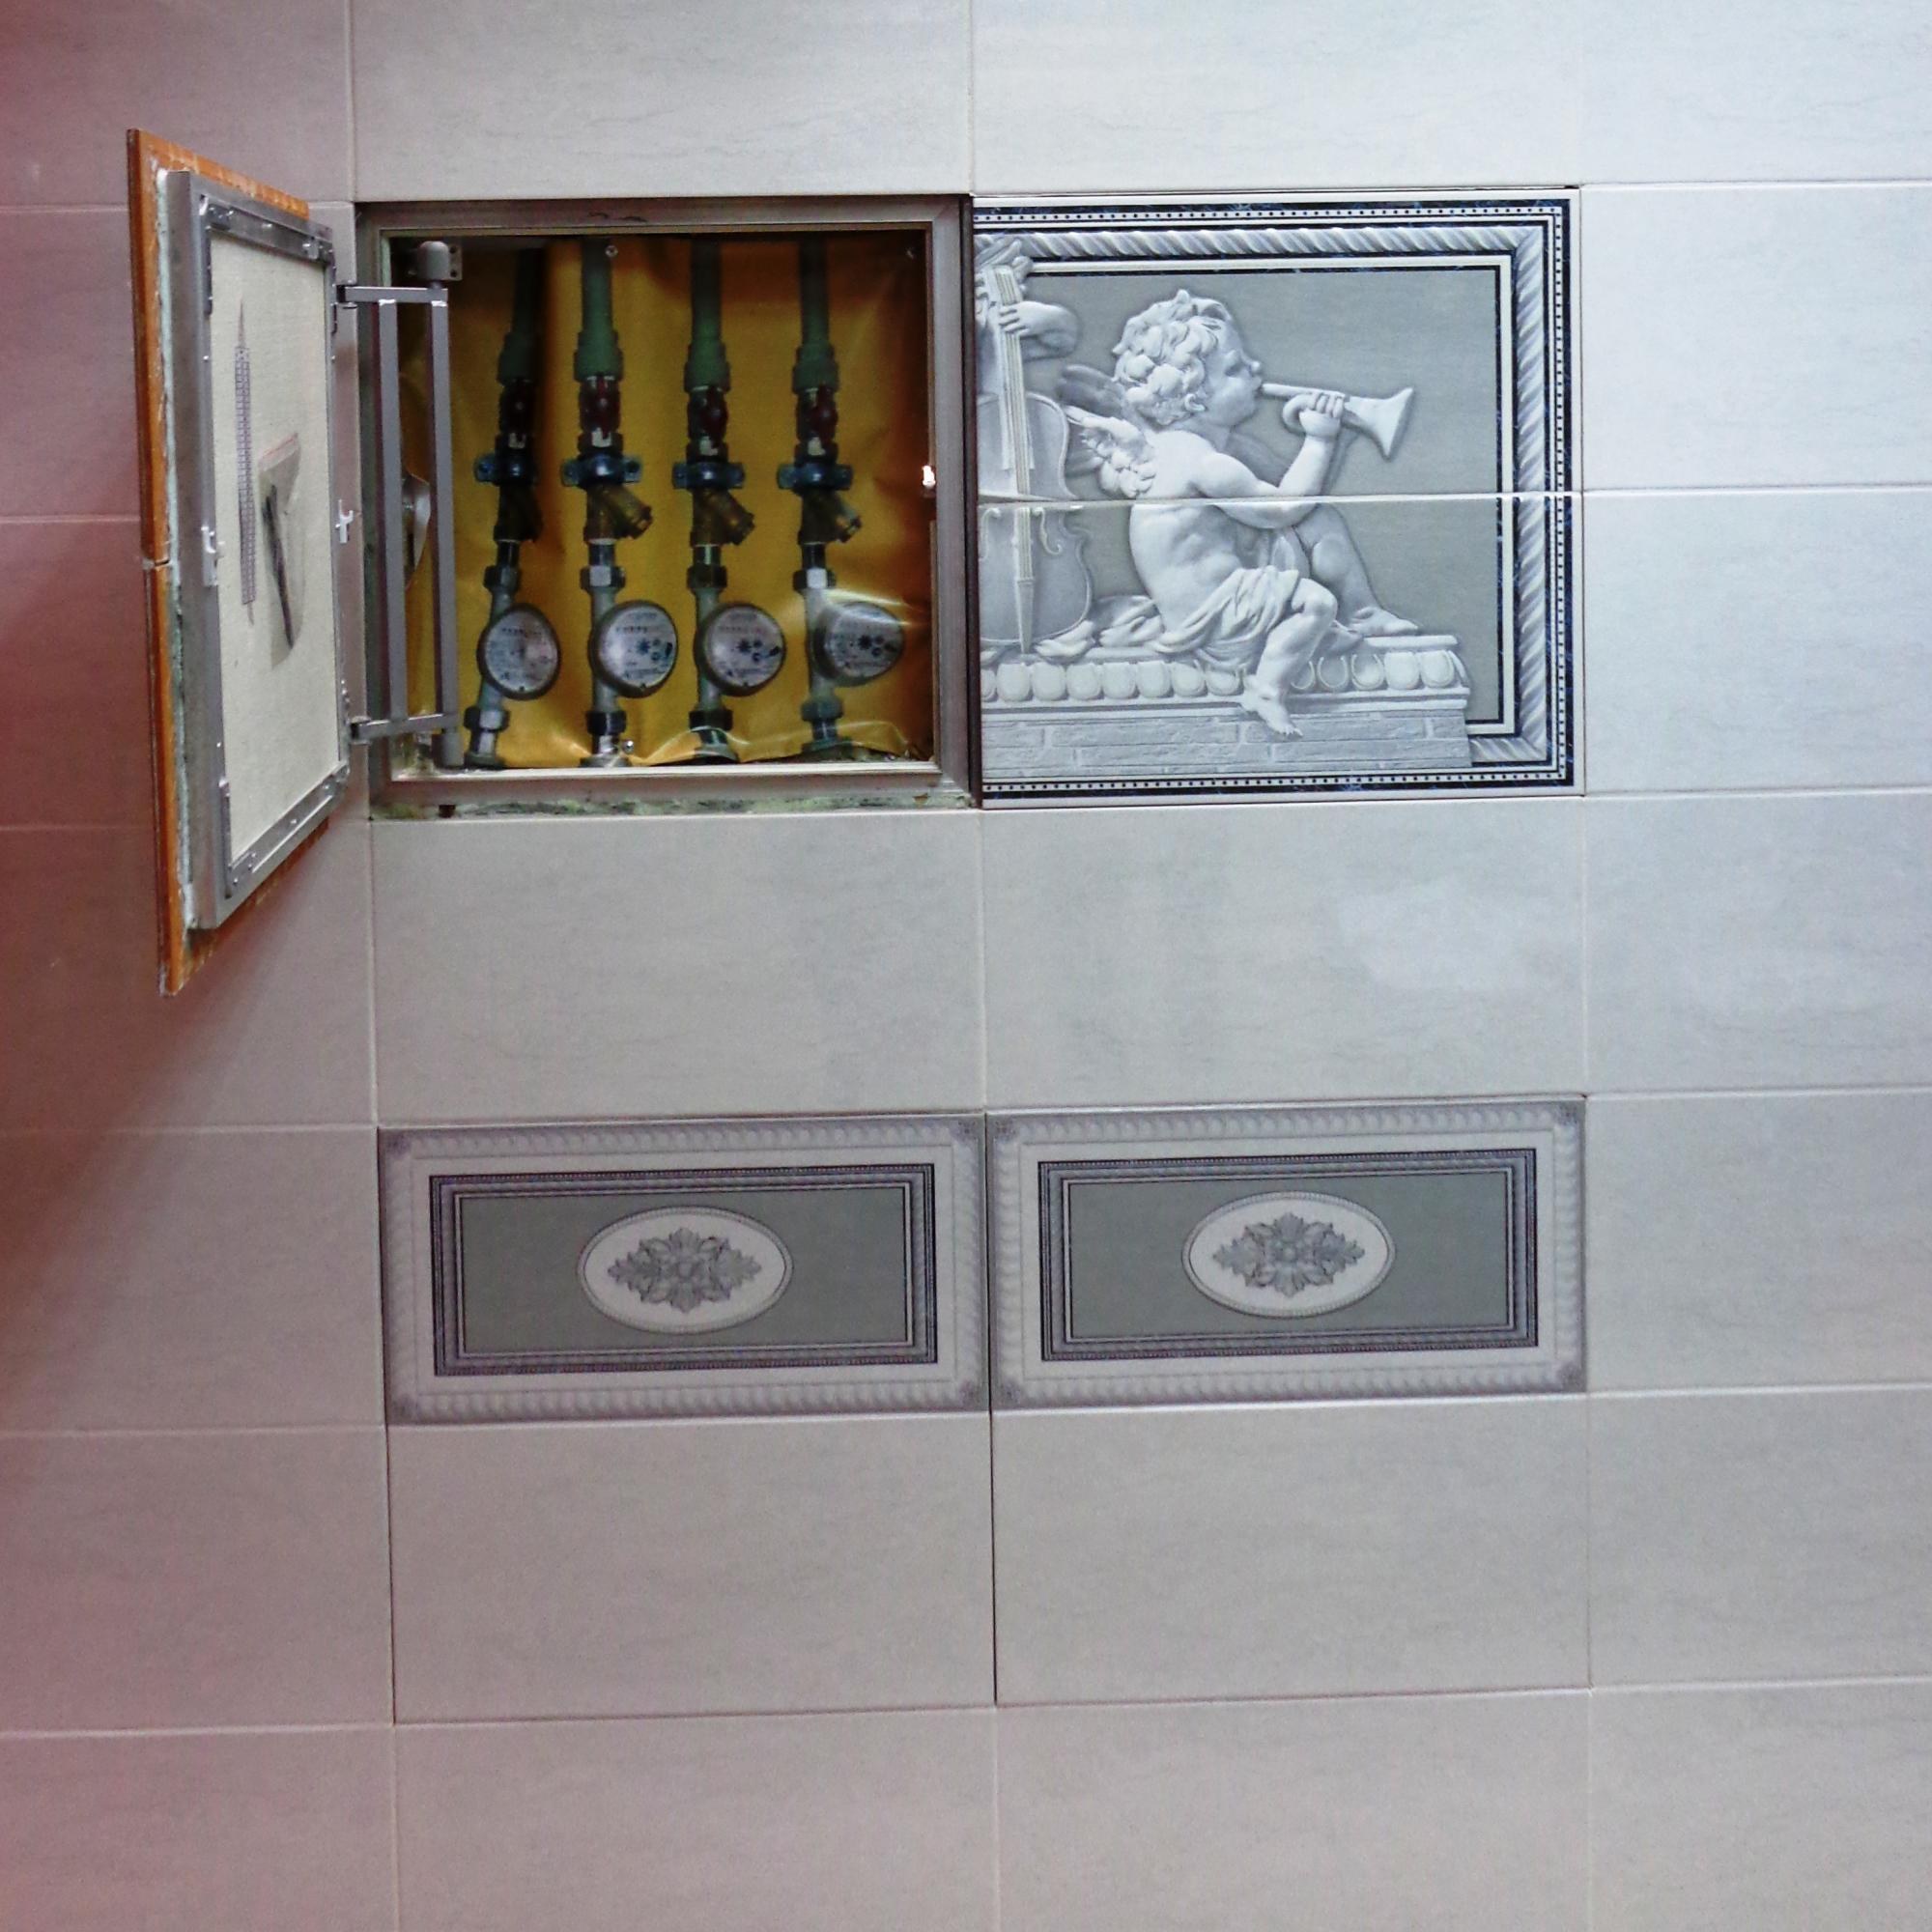 металлическая дверца для сантехнического шкафа